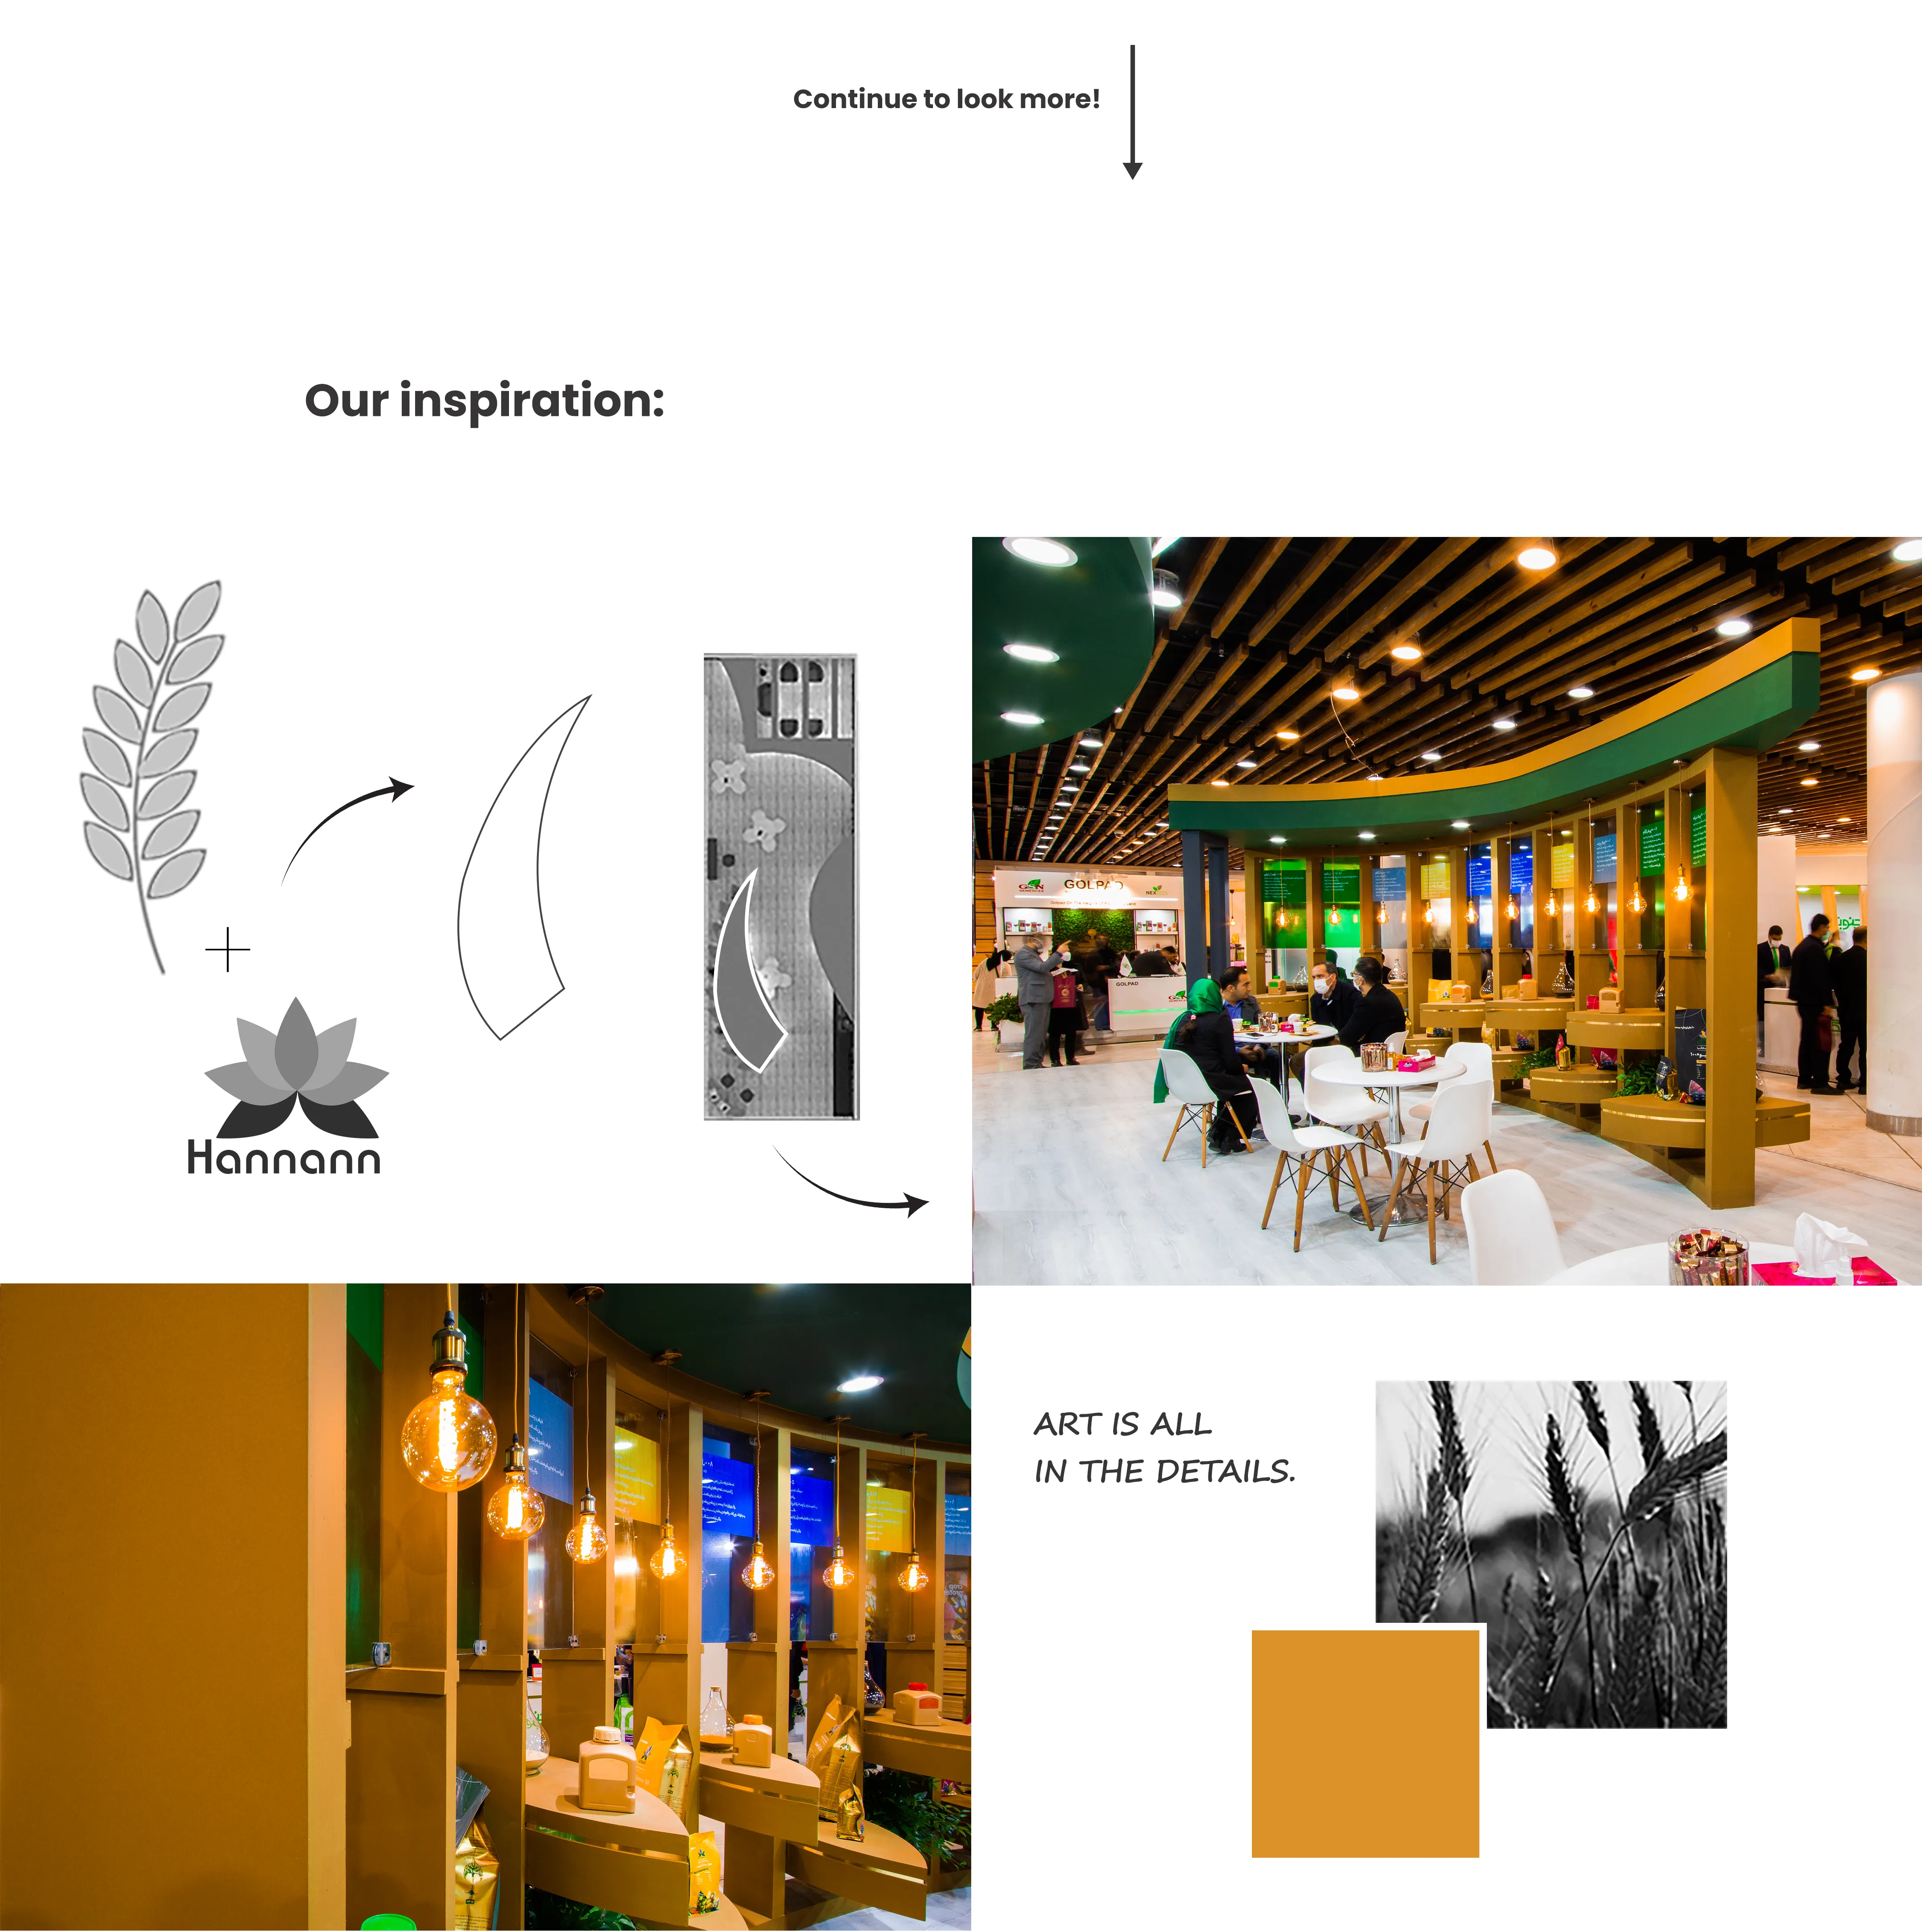   طراحی غرفه و غرفه سازی نمایشگاهی حنان نهاده آسیا نمایشگاه  نهاده های کشاورزی 1400 